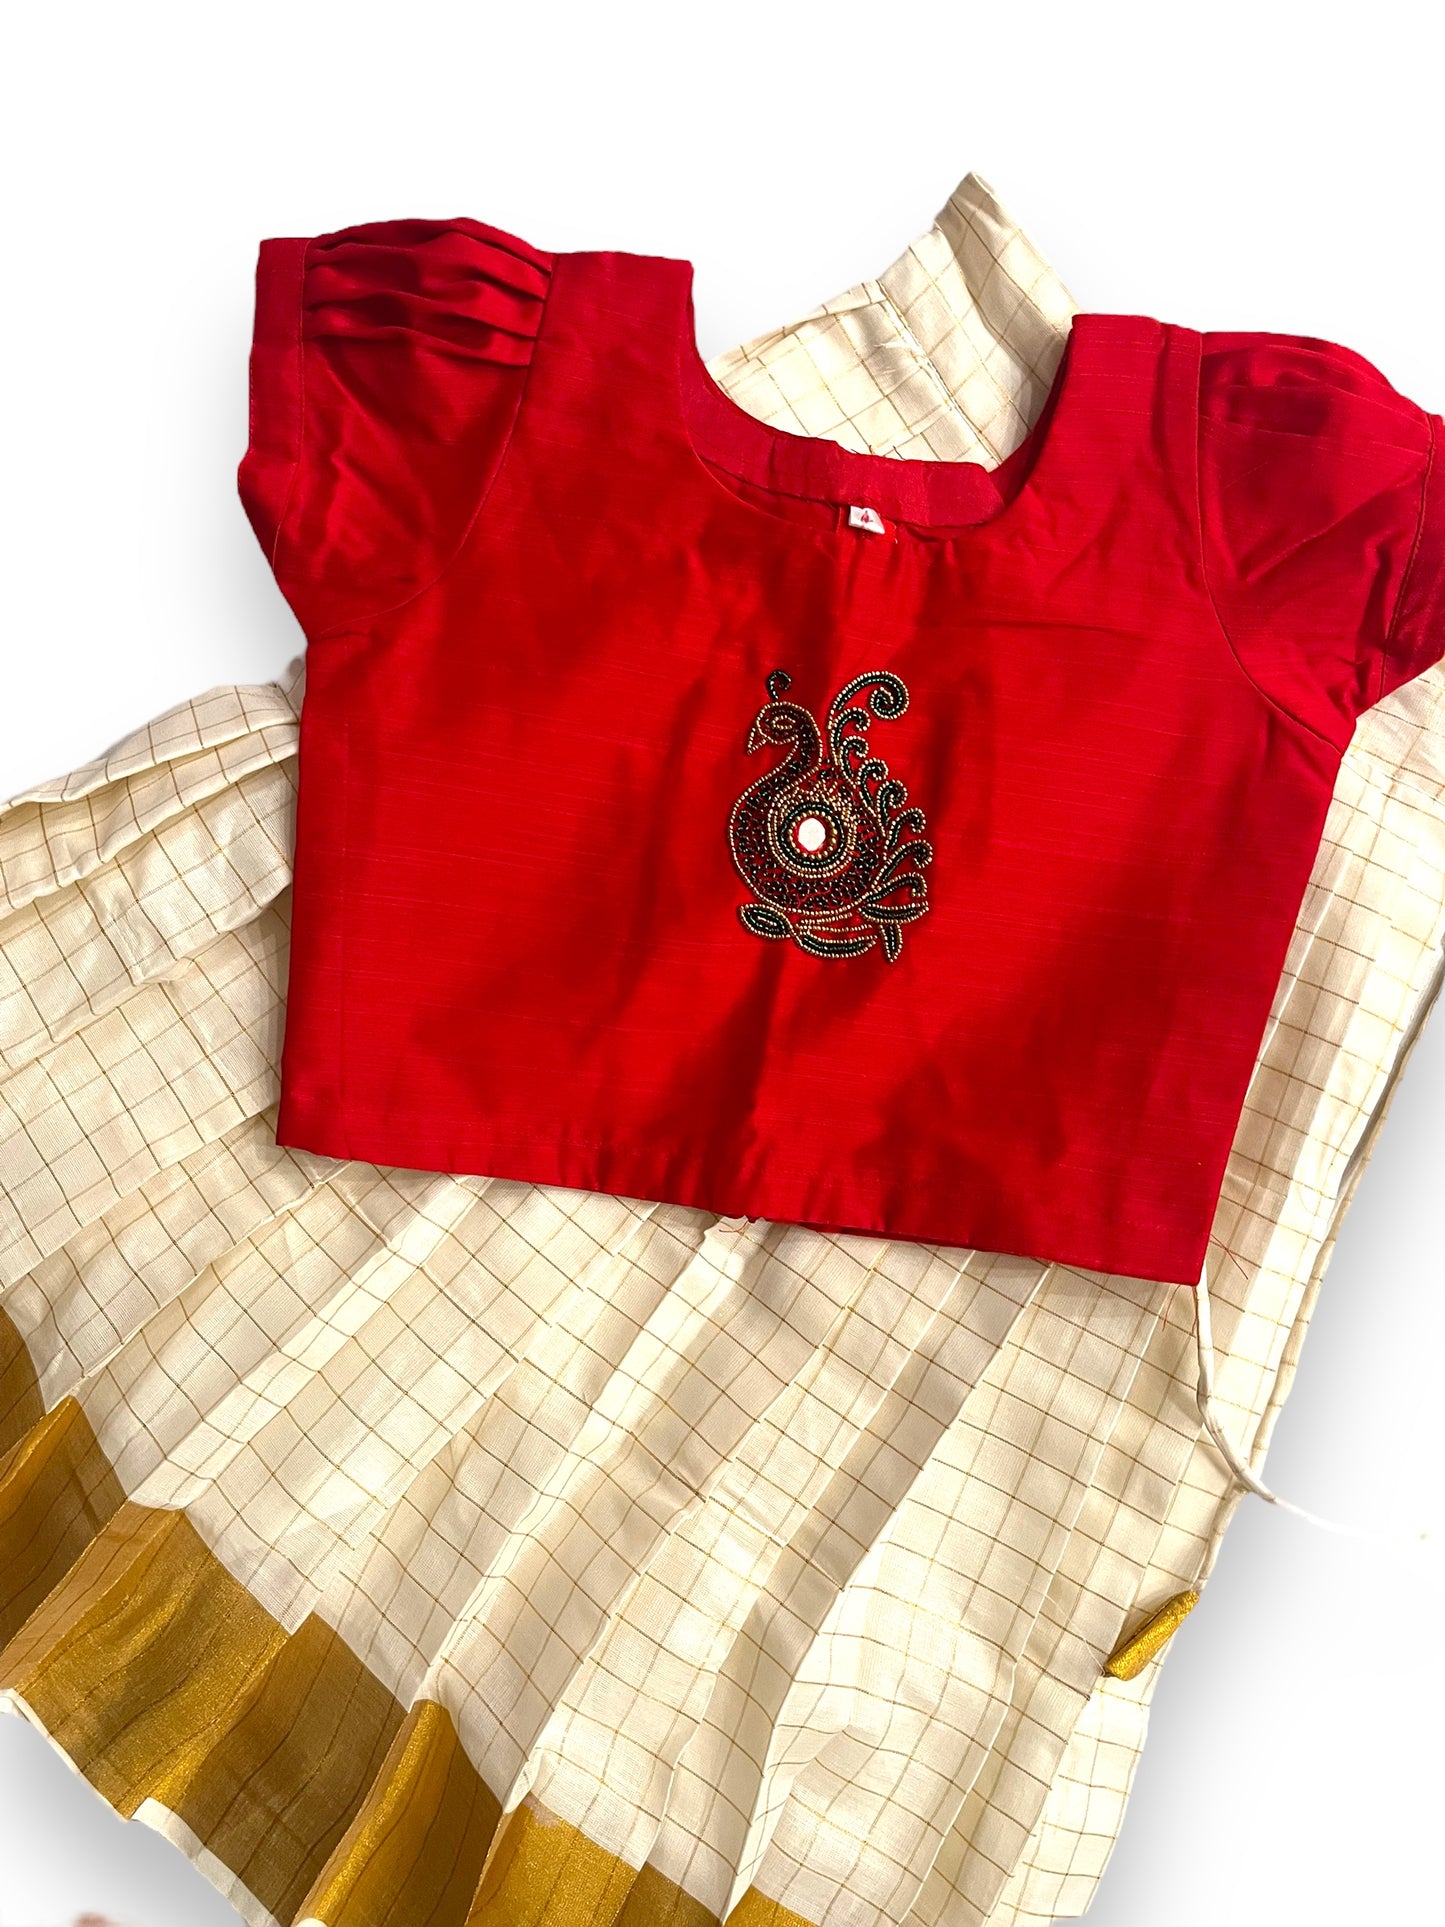 Girls Pattu Pavada| Red Tissue Skirt Blouse | Kerala Vishu Dawani| Indian Kerala saree |Onam Saree | Lehenga | Pattu pavada Age 4-6